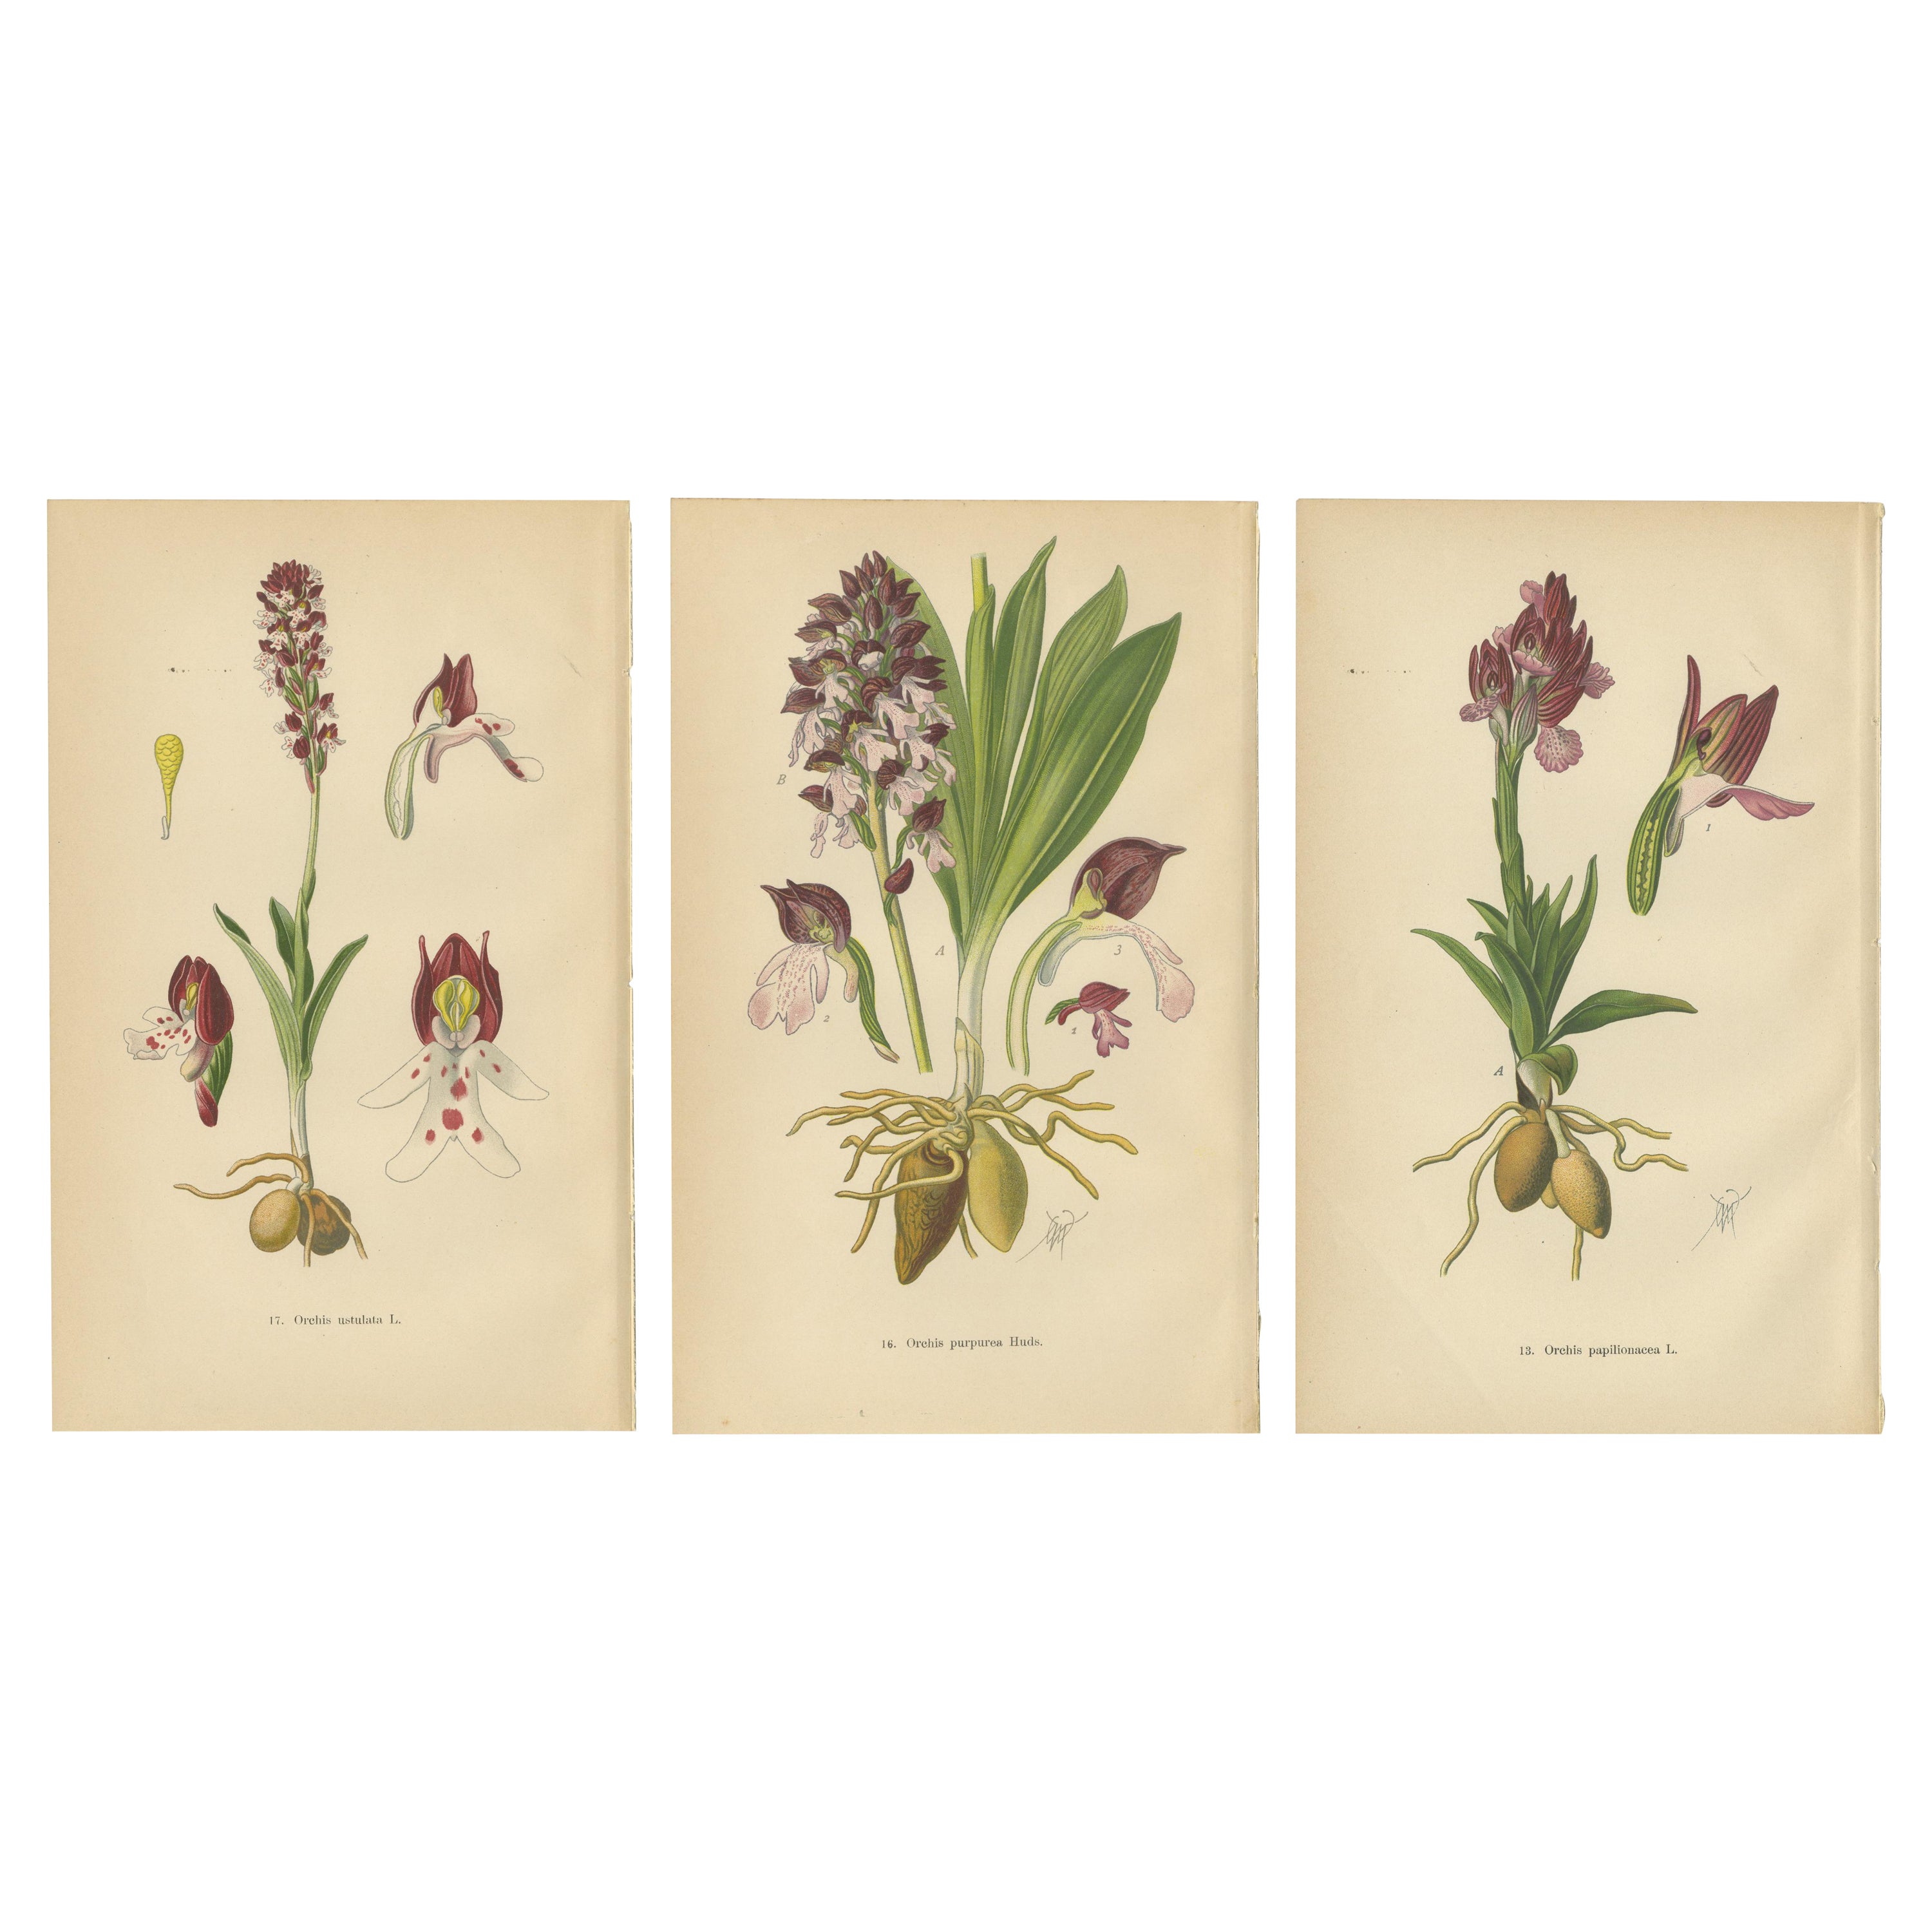 Ephemeral Elegance: Orchids of 1904 in Müller's Illustrations